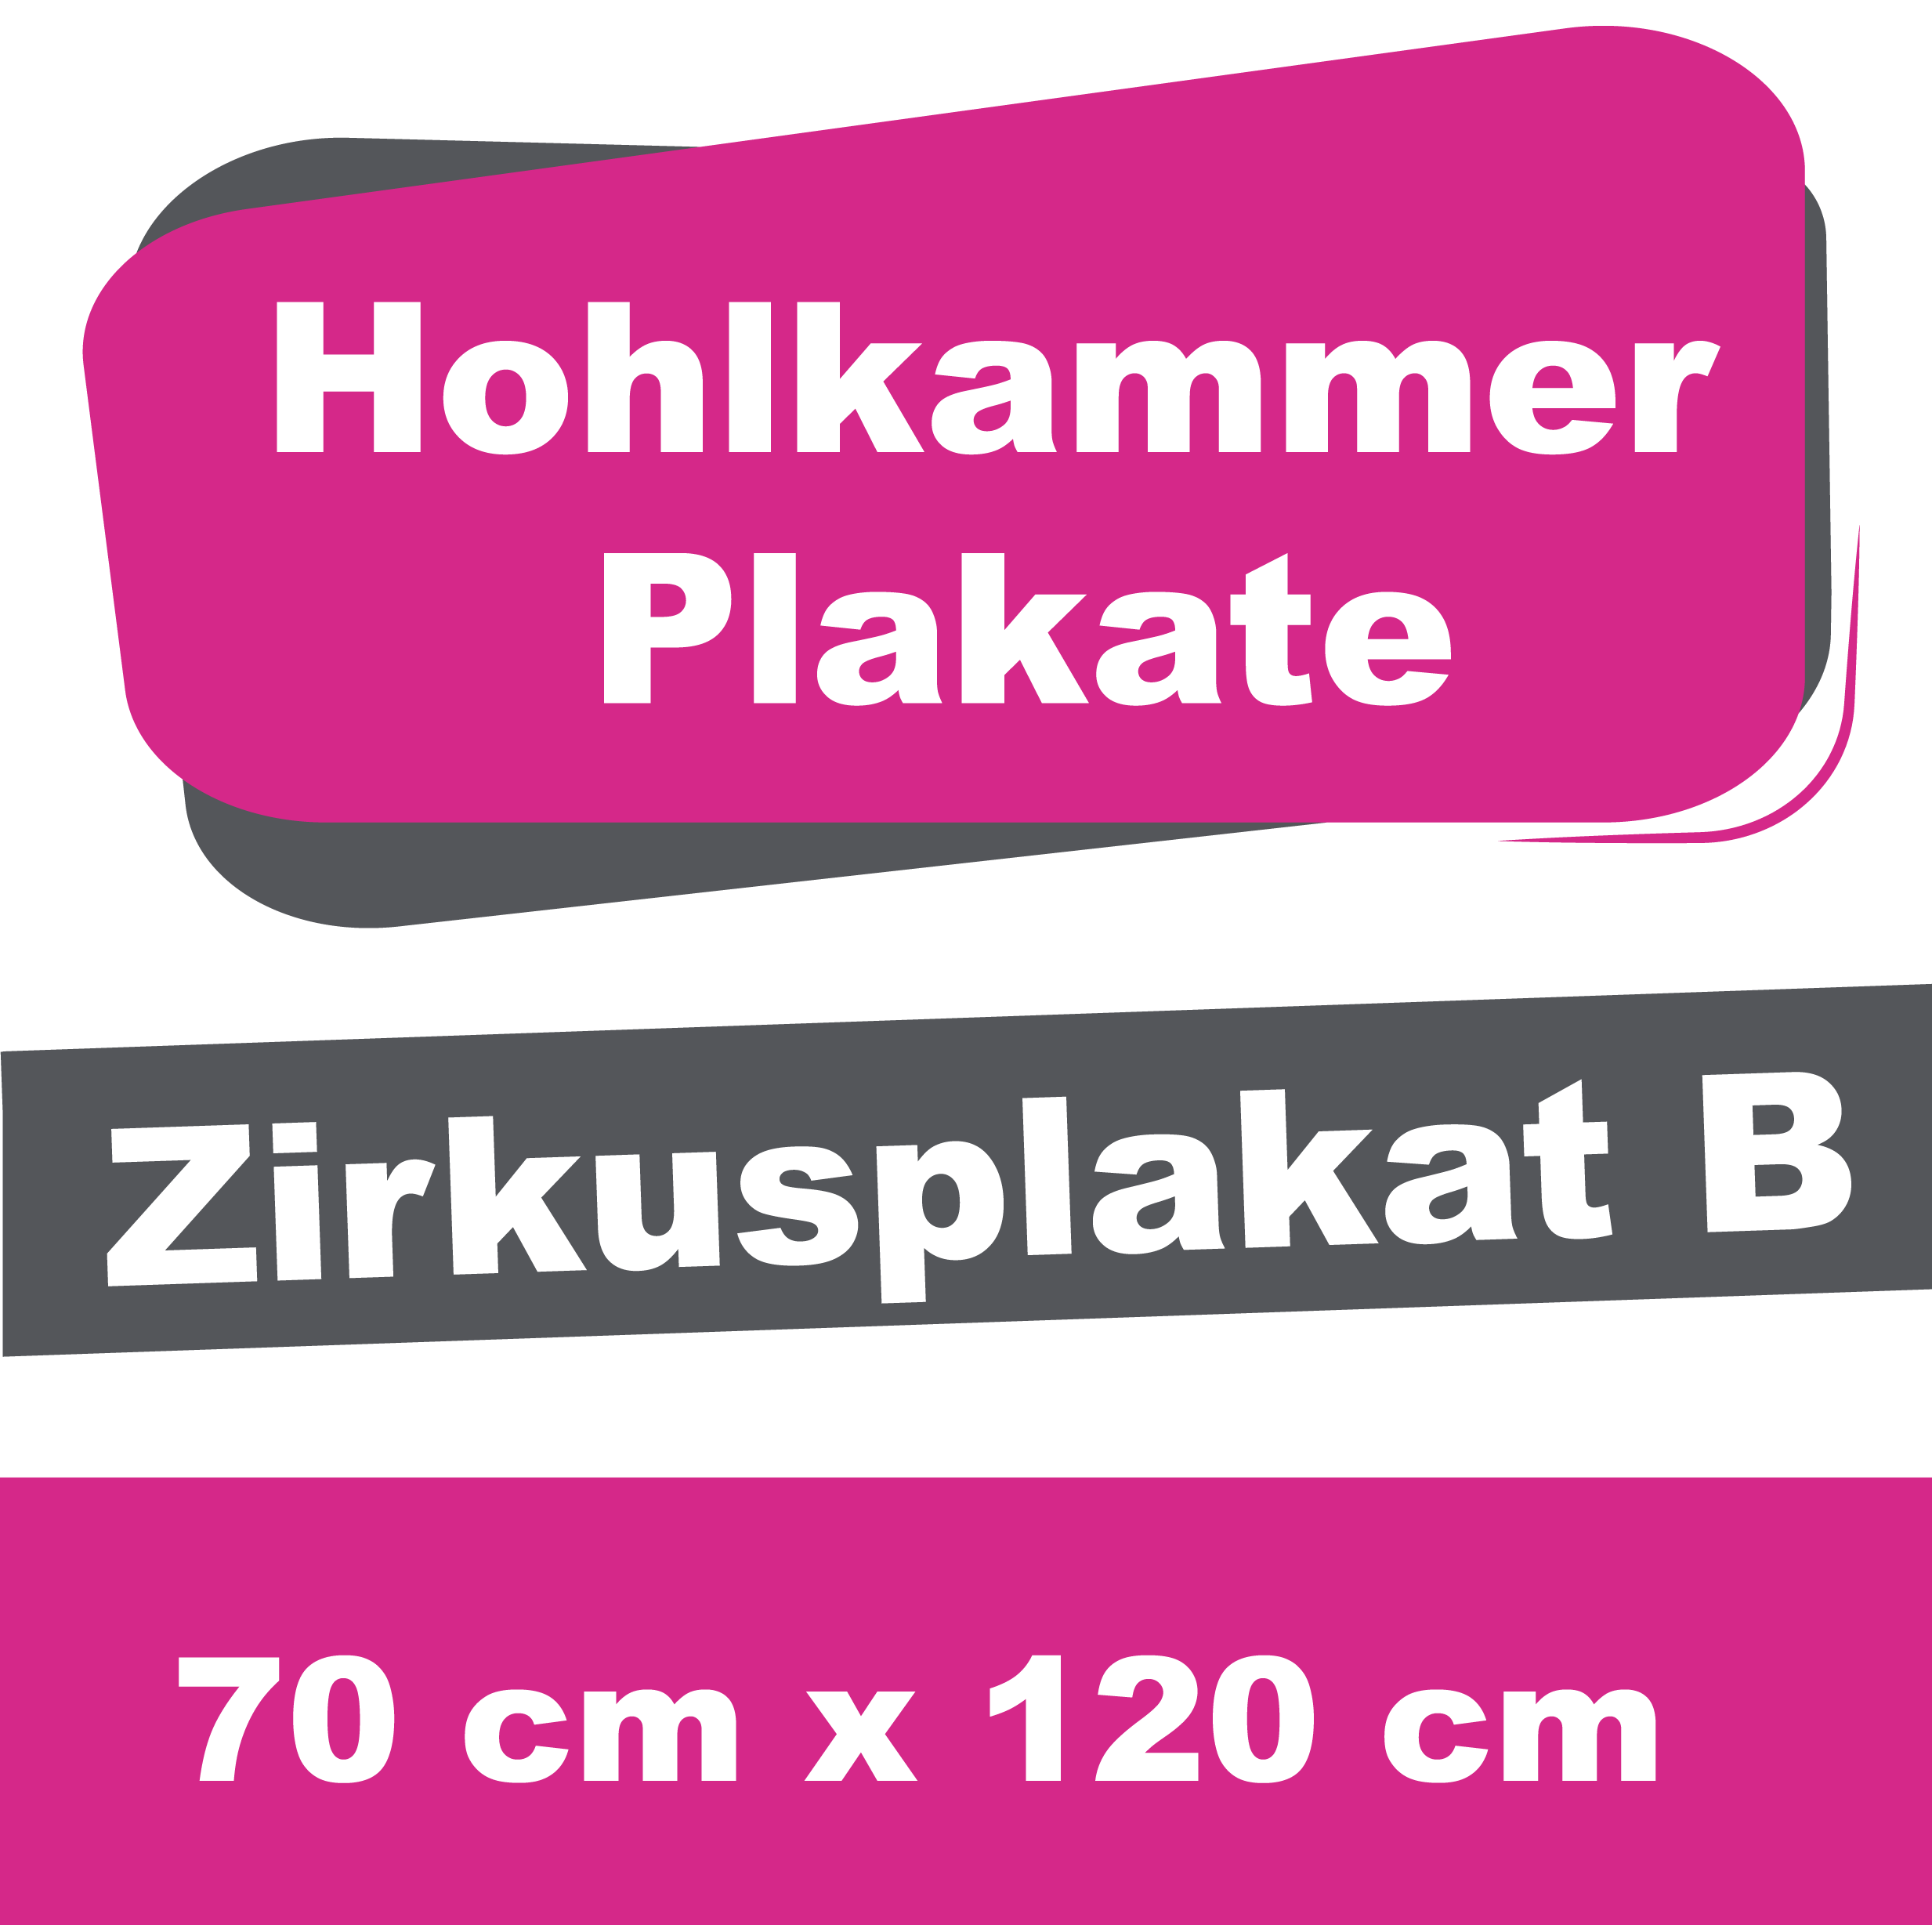 Wahl-/Event-/Zirkusplakat B - Hohlkammerplakate 70 x 120 cm